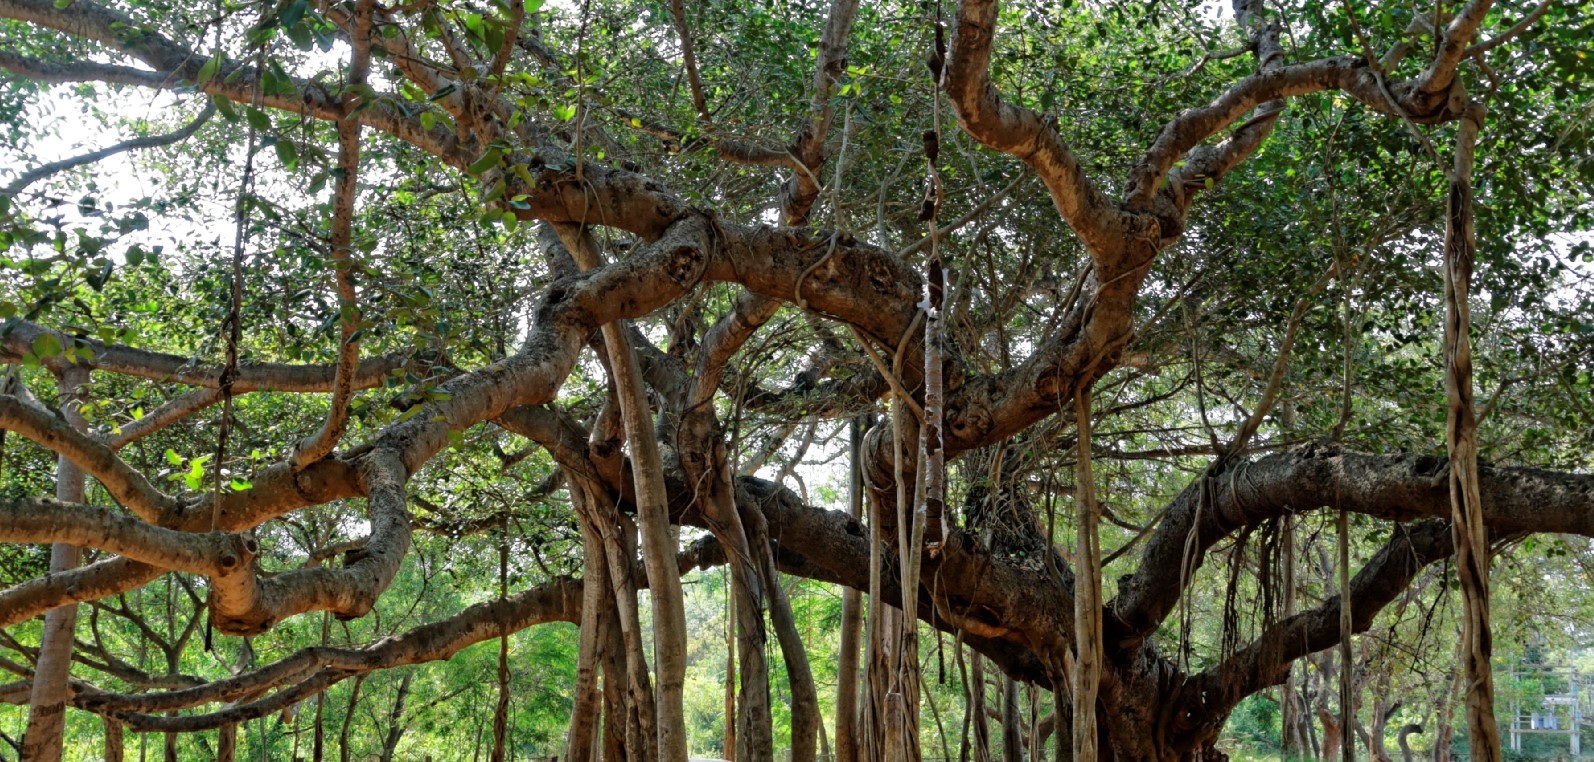 वृक्षः शाश्वत जीवनाचा अशाश्वत अंश